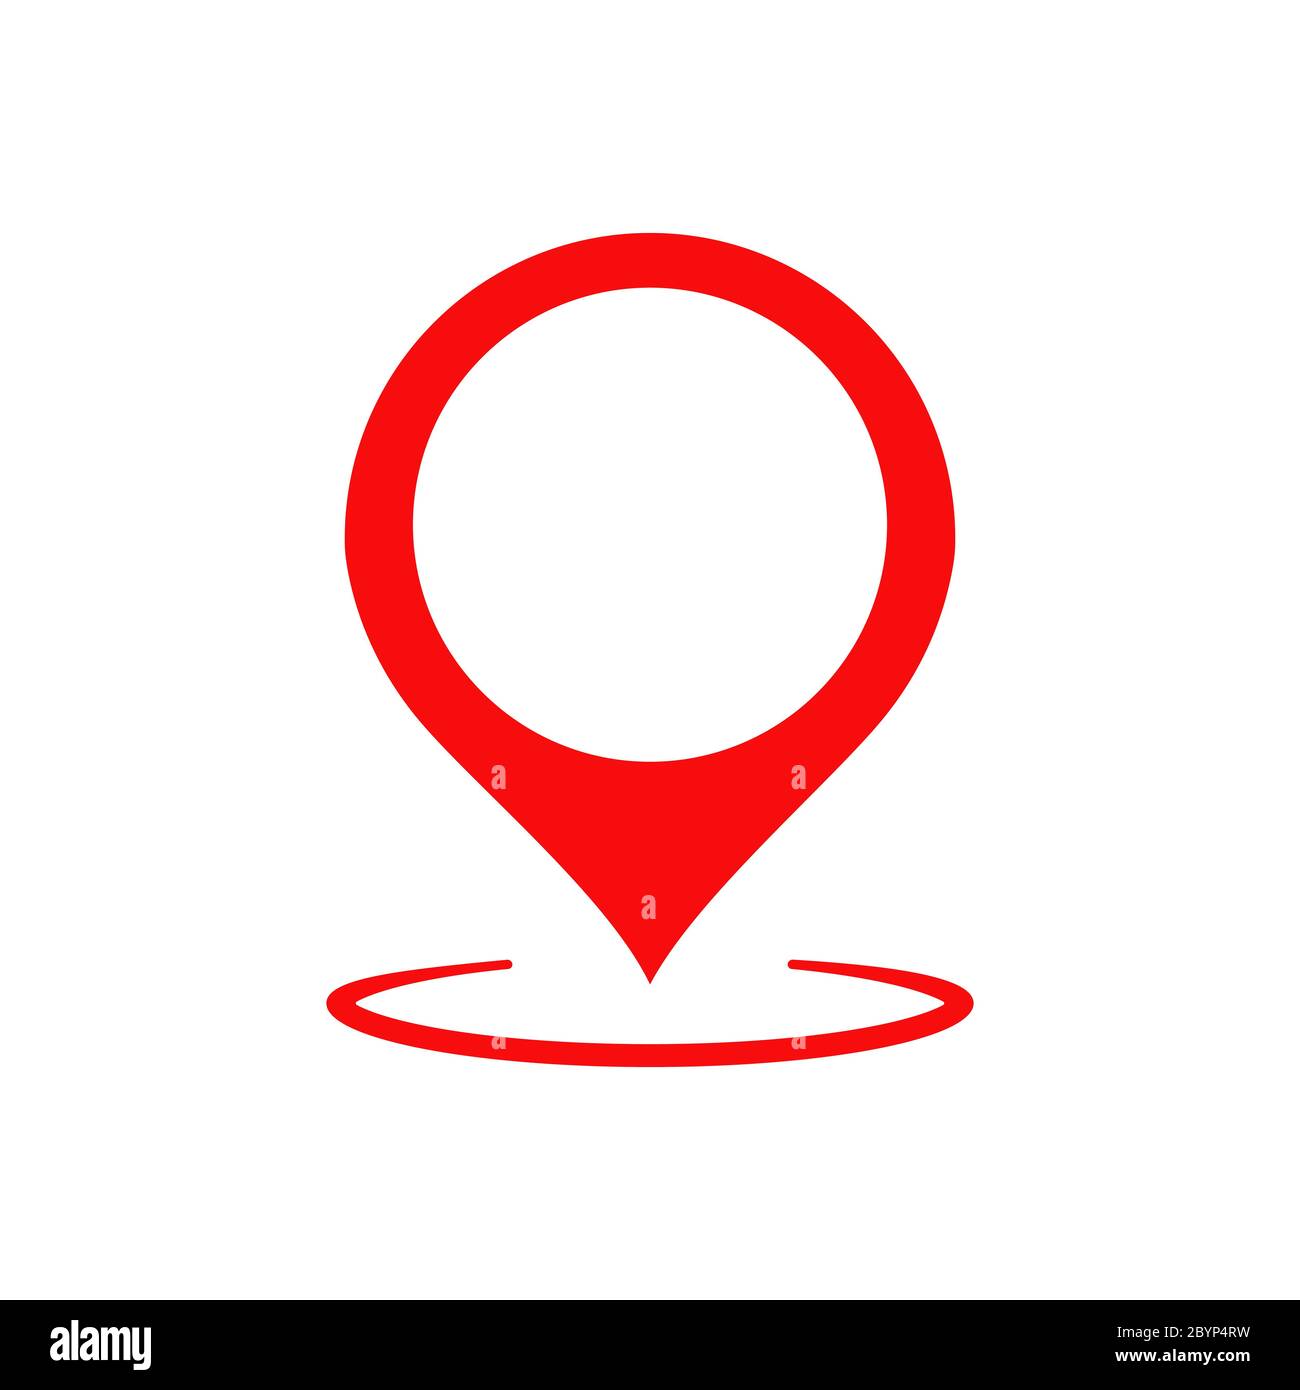 Pointeur de carte, géolocalisation, icône de localisation ou géolocalisation, gps, sur fond blanc isolé. Vecteur EPS 10. Illustration de Vecteur